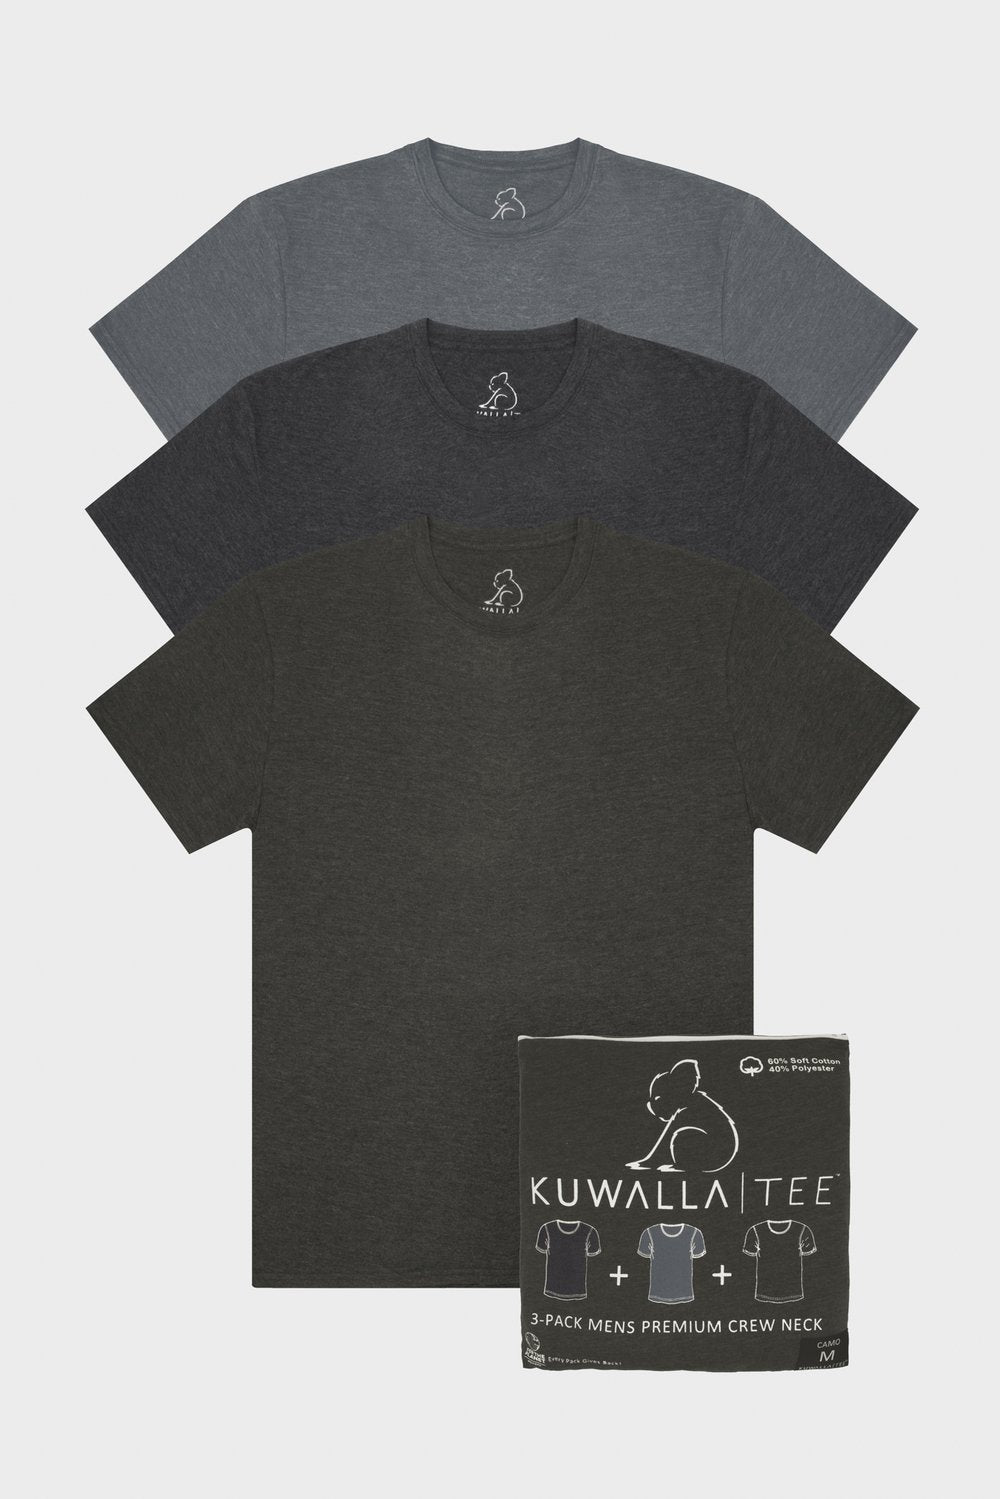 Buy Eazy Scoop Tee Men's Shirts from Kuwalla. Find Kuwalla fashion